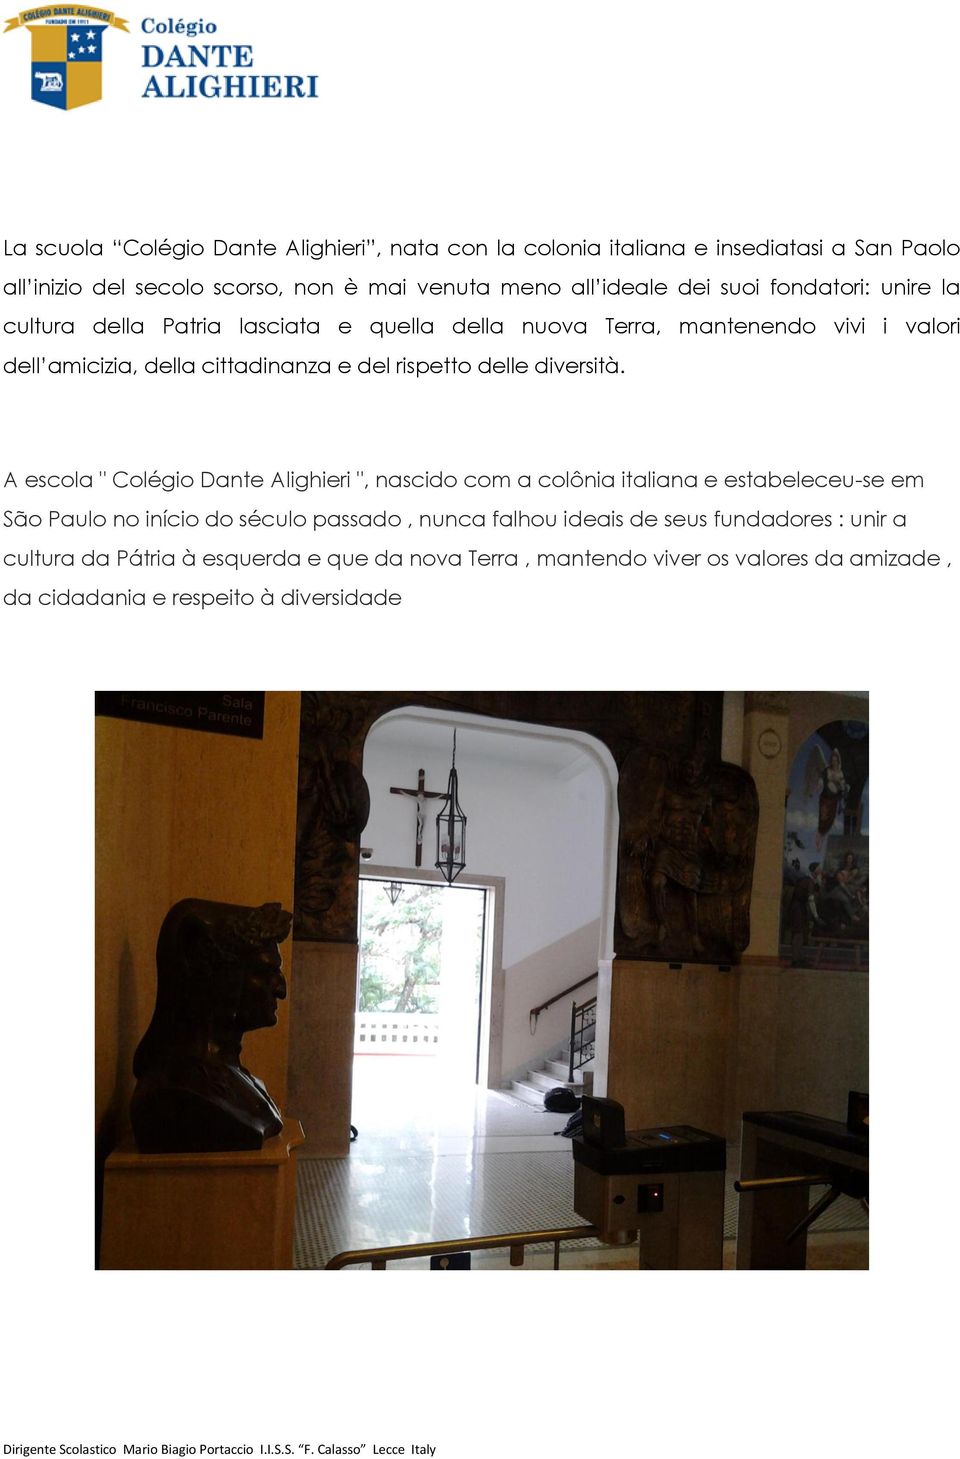 A escola " Colégio Dante Alighieri ", nascido com a colônia italiana e estabeleceu-se em São Paulo no início do século passado, nunca falhou ideais de seus fundadores : unir a